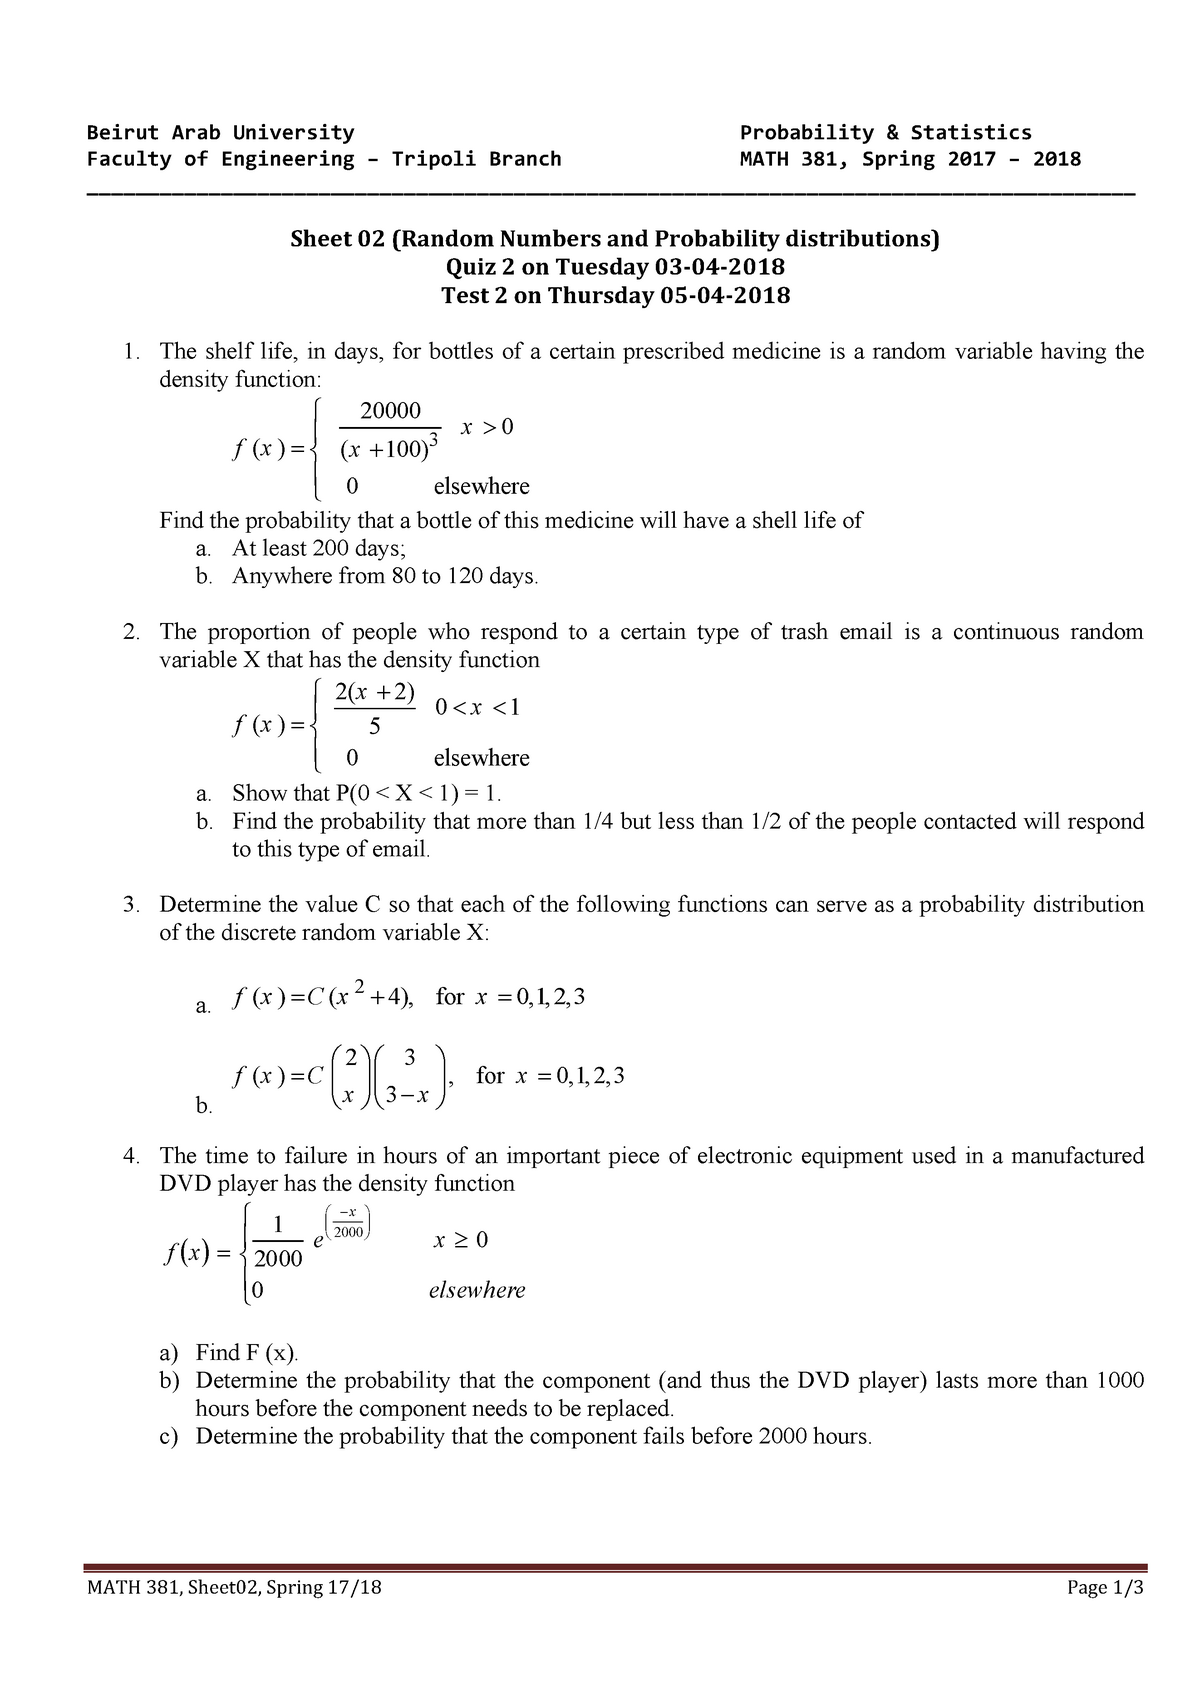 Math381 Sheets 02 Dr Ayman Masri Studocu